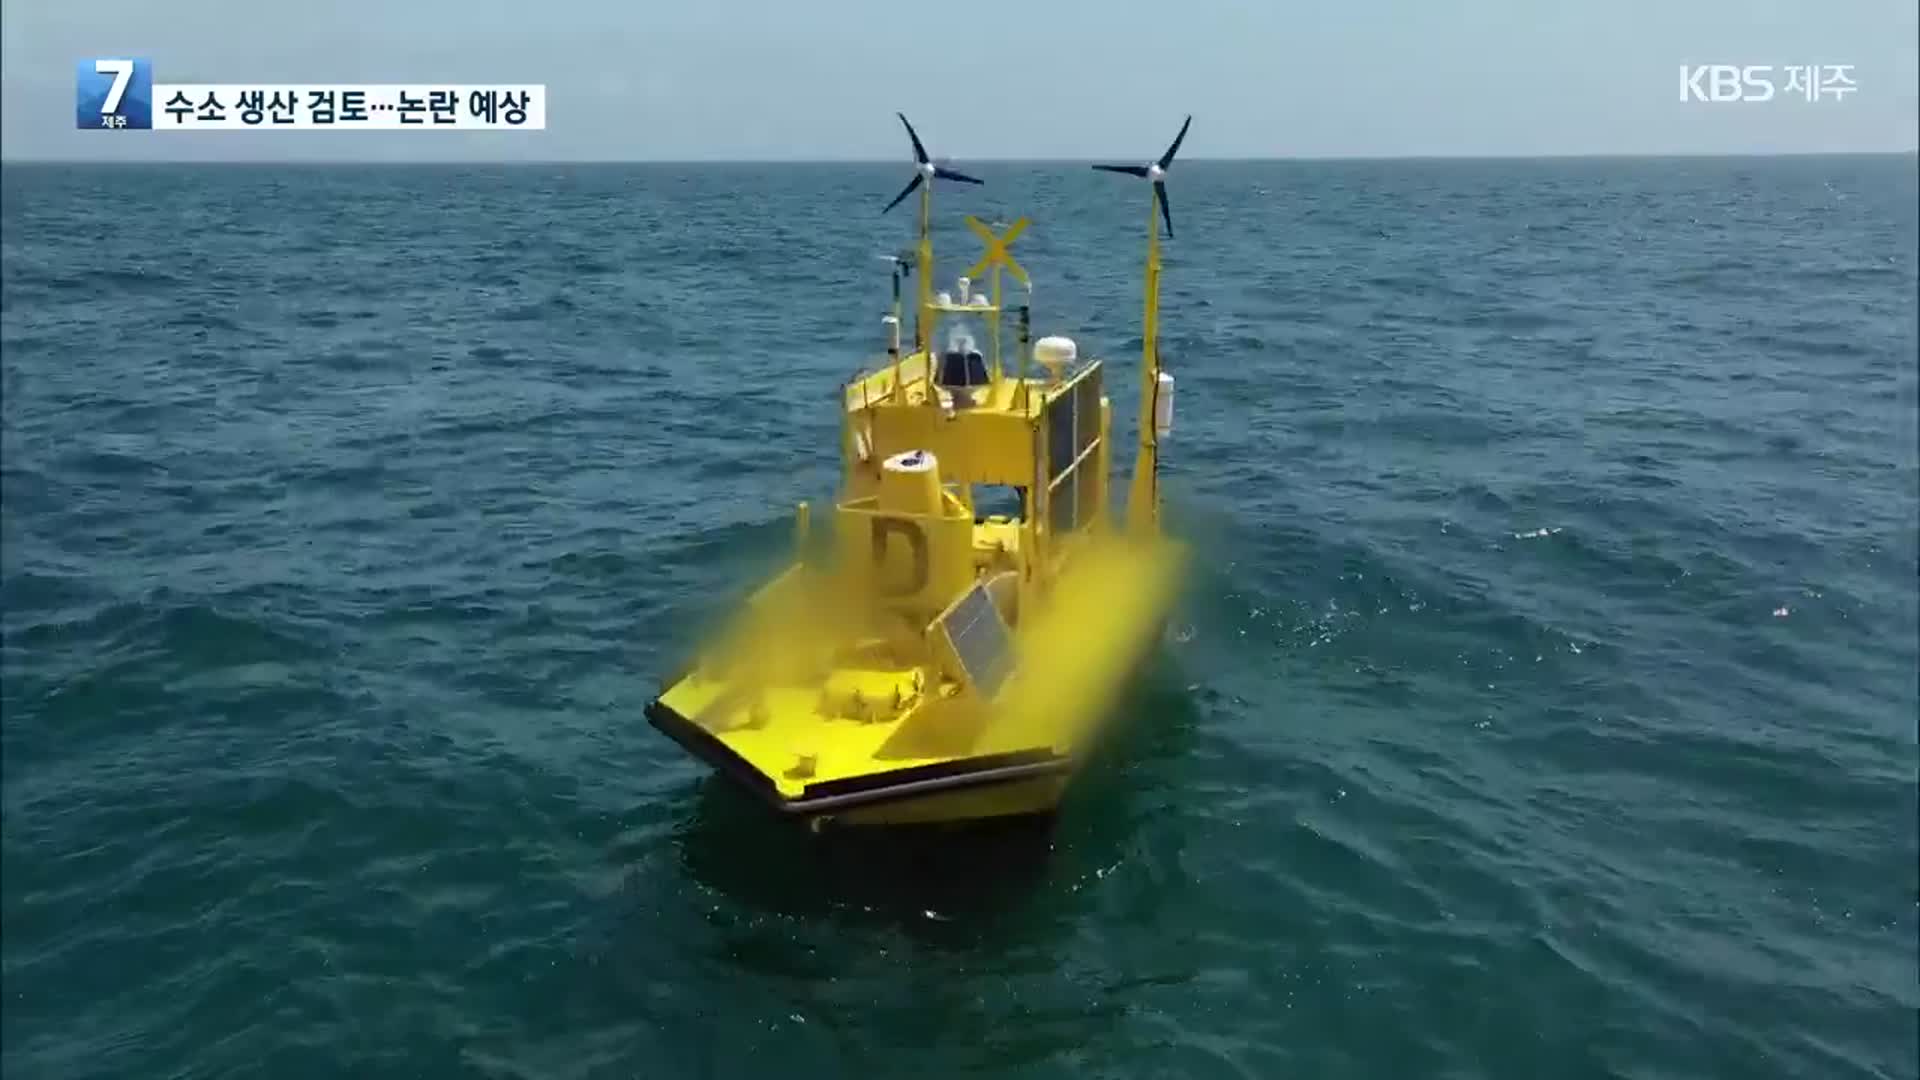 [단독] 해상풍력으로 ‘수소 에너지’ 생산도 검토